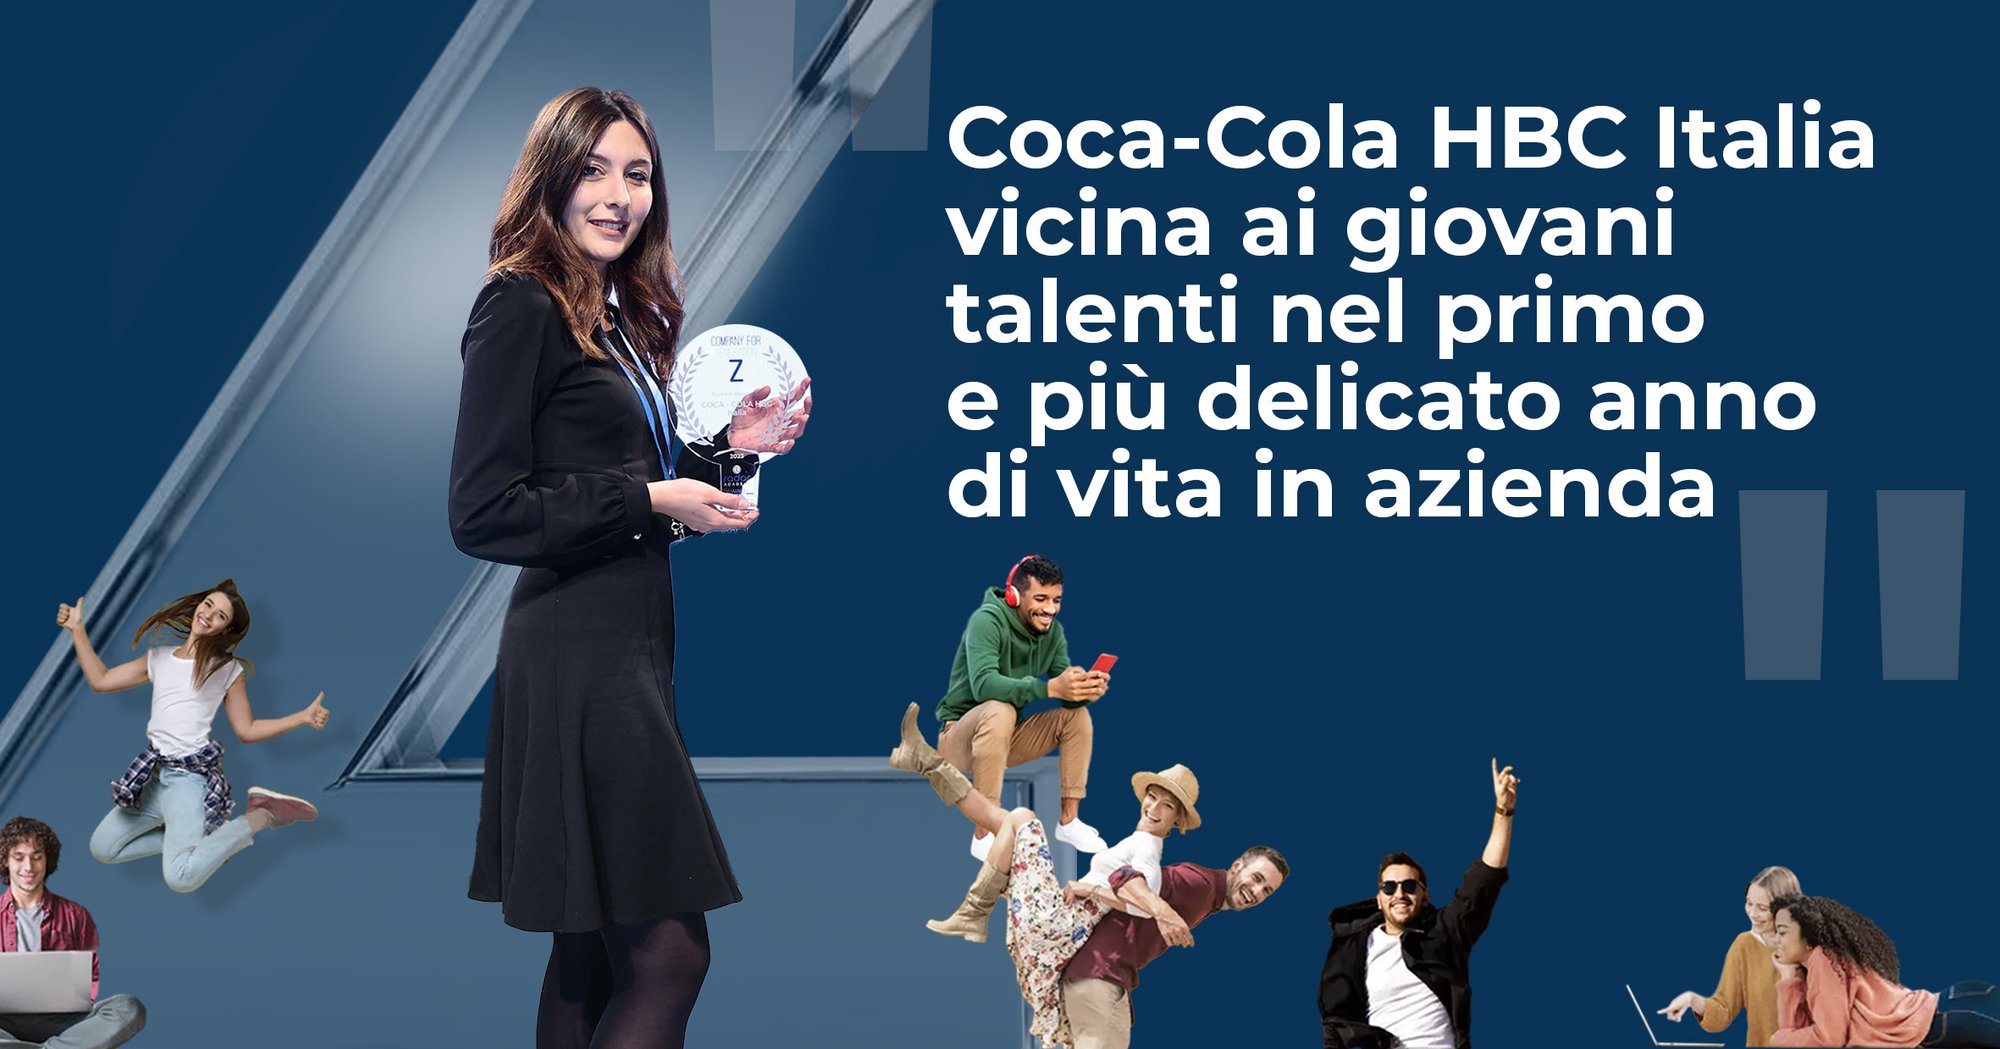 Coca-Cola HBC Italia vicina ai giovani talenti nel primo anno di vita in azienda